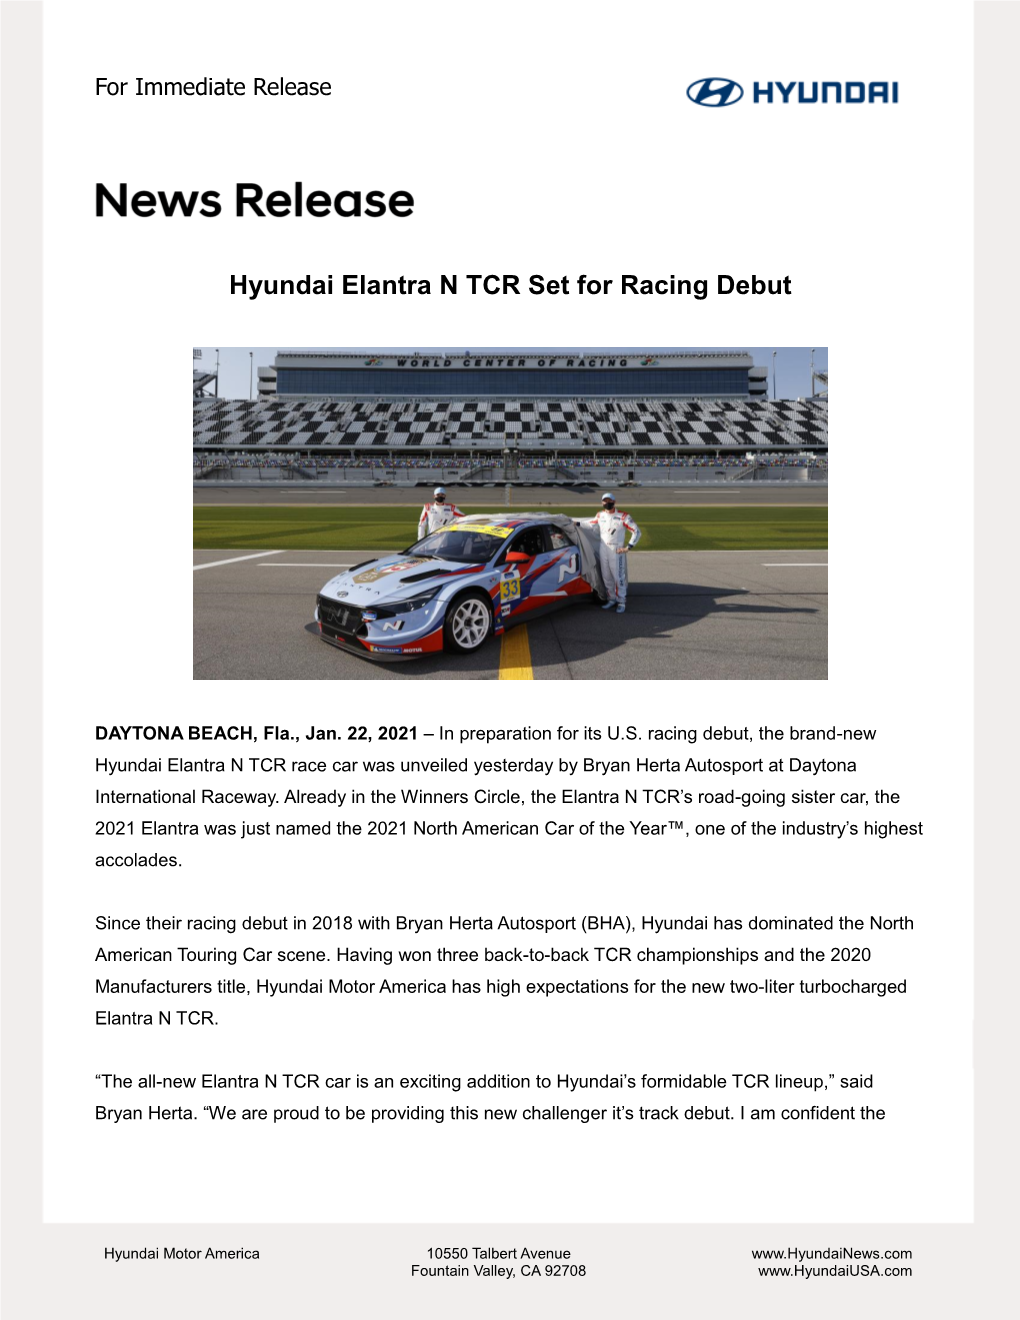 Hyundai Elantra N TCR Set for Racing Debut